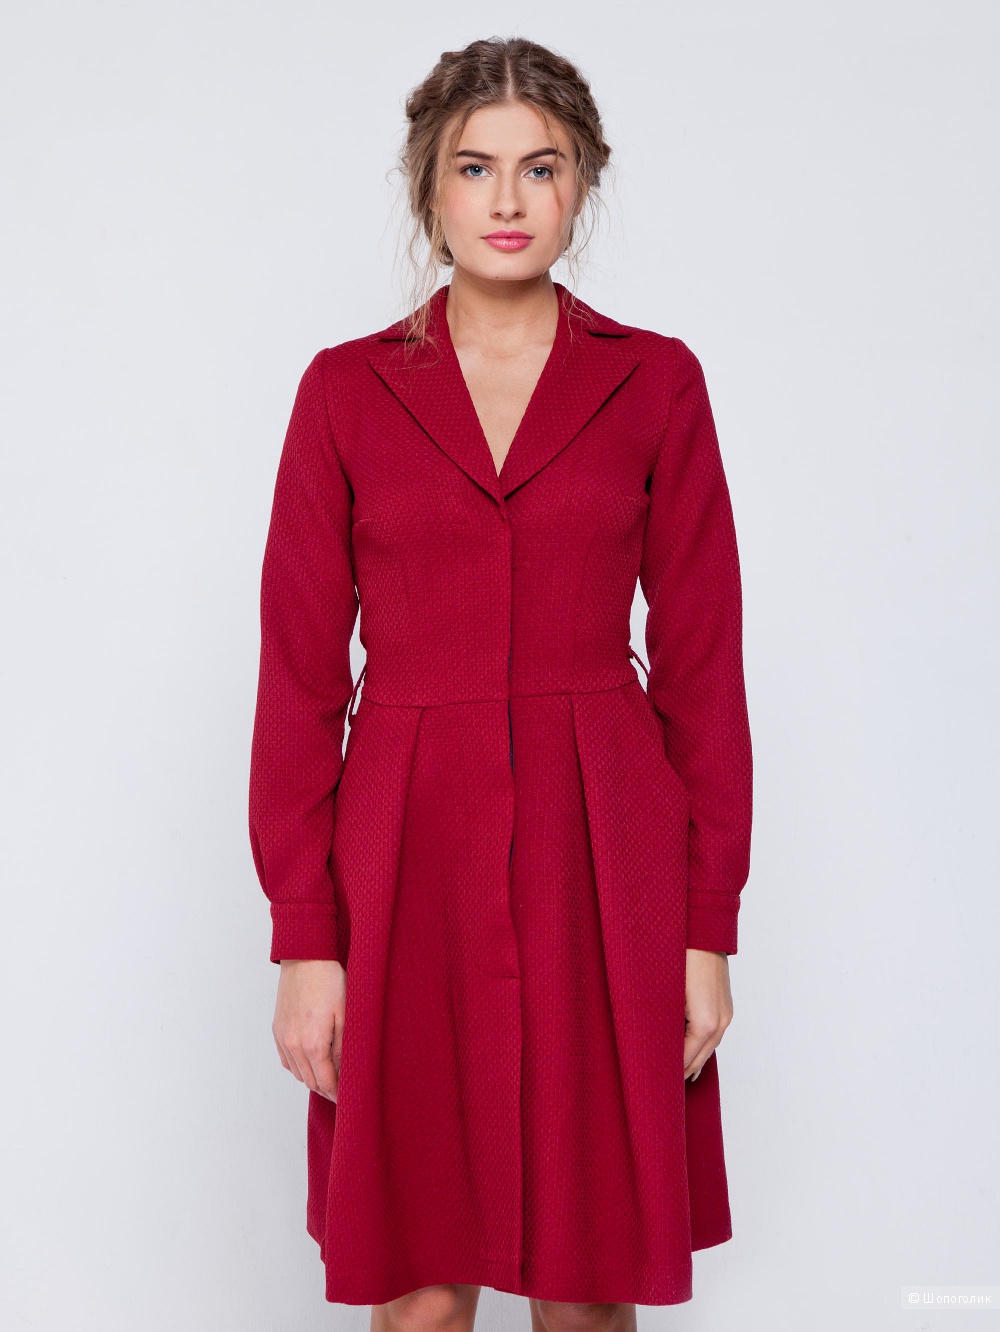 Платье-пальто с отложными бортами воротника, винного цвета , фирма Grand ,46 размер